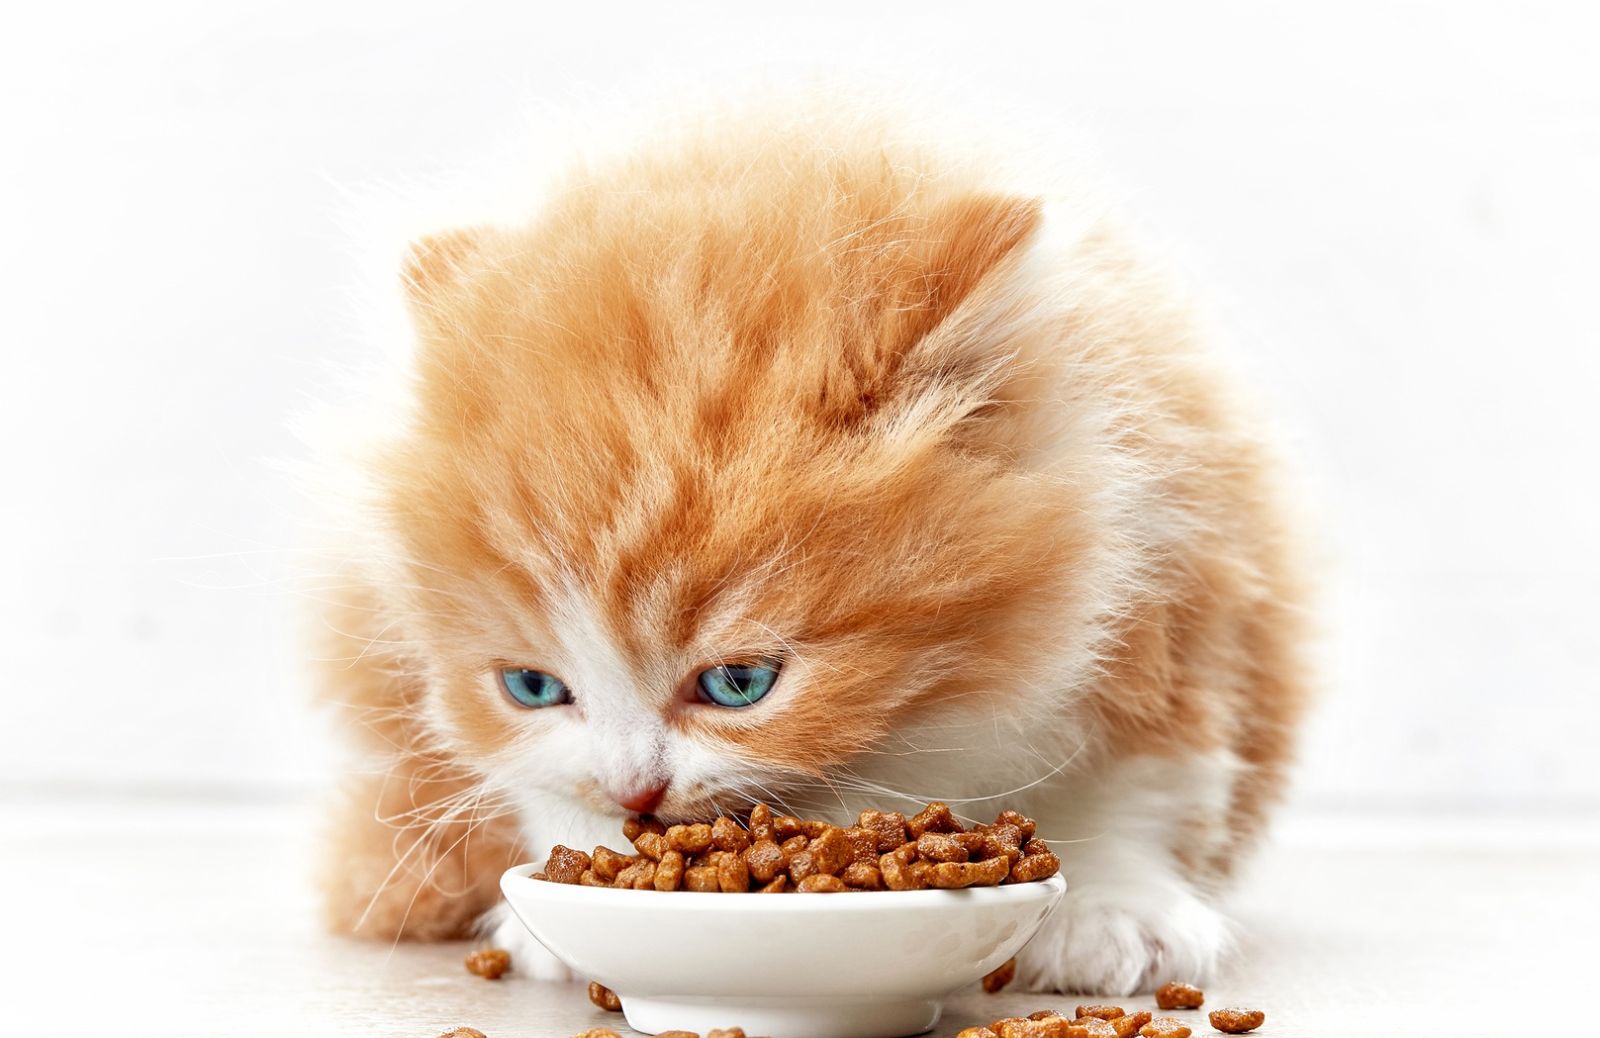 L’alimentazione del gattino: come nutrirlo dai 2 mesi in poi